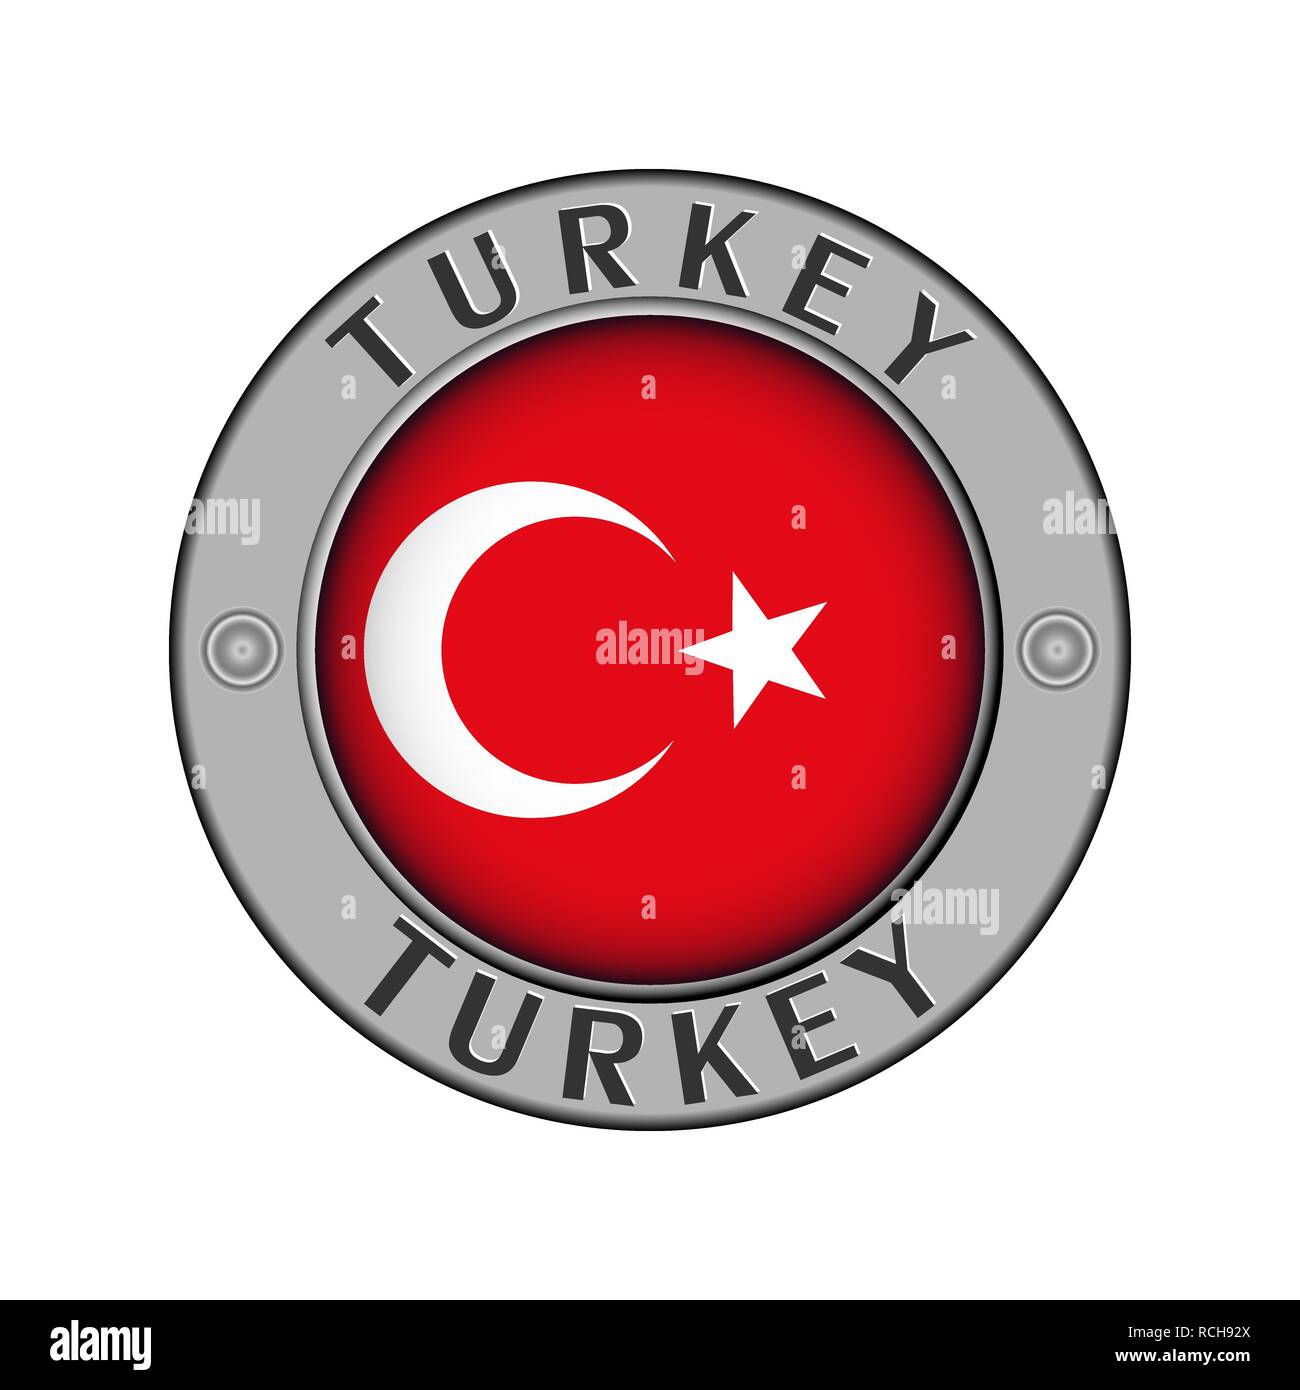 Rotondo di metallo medaglione con il nome del paese la Turchia e un indicatore rotondo nel centro Illustrazione Vettoriale